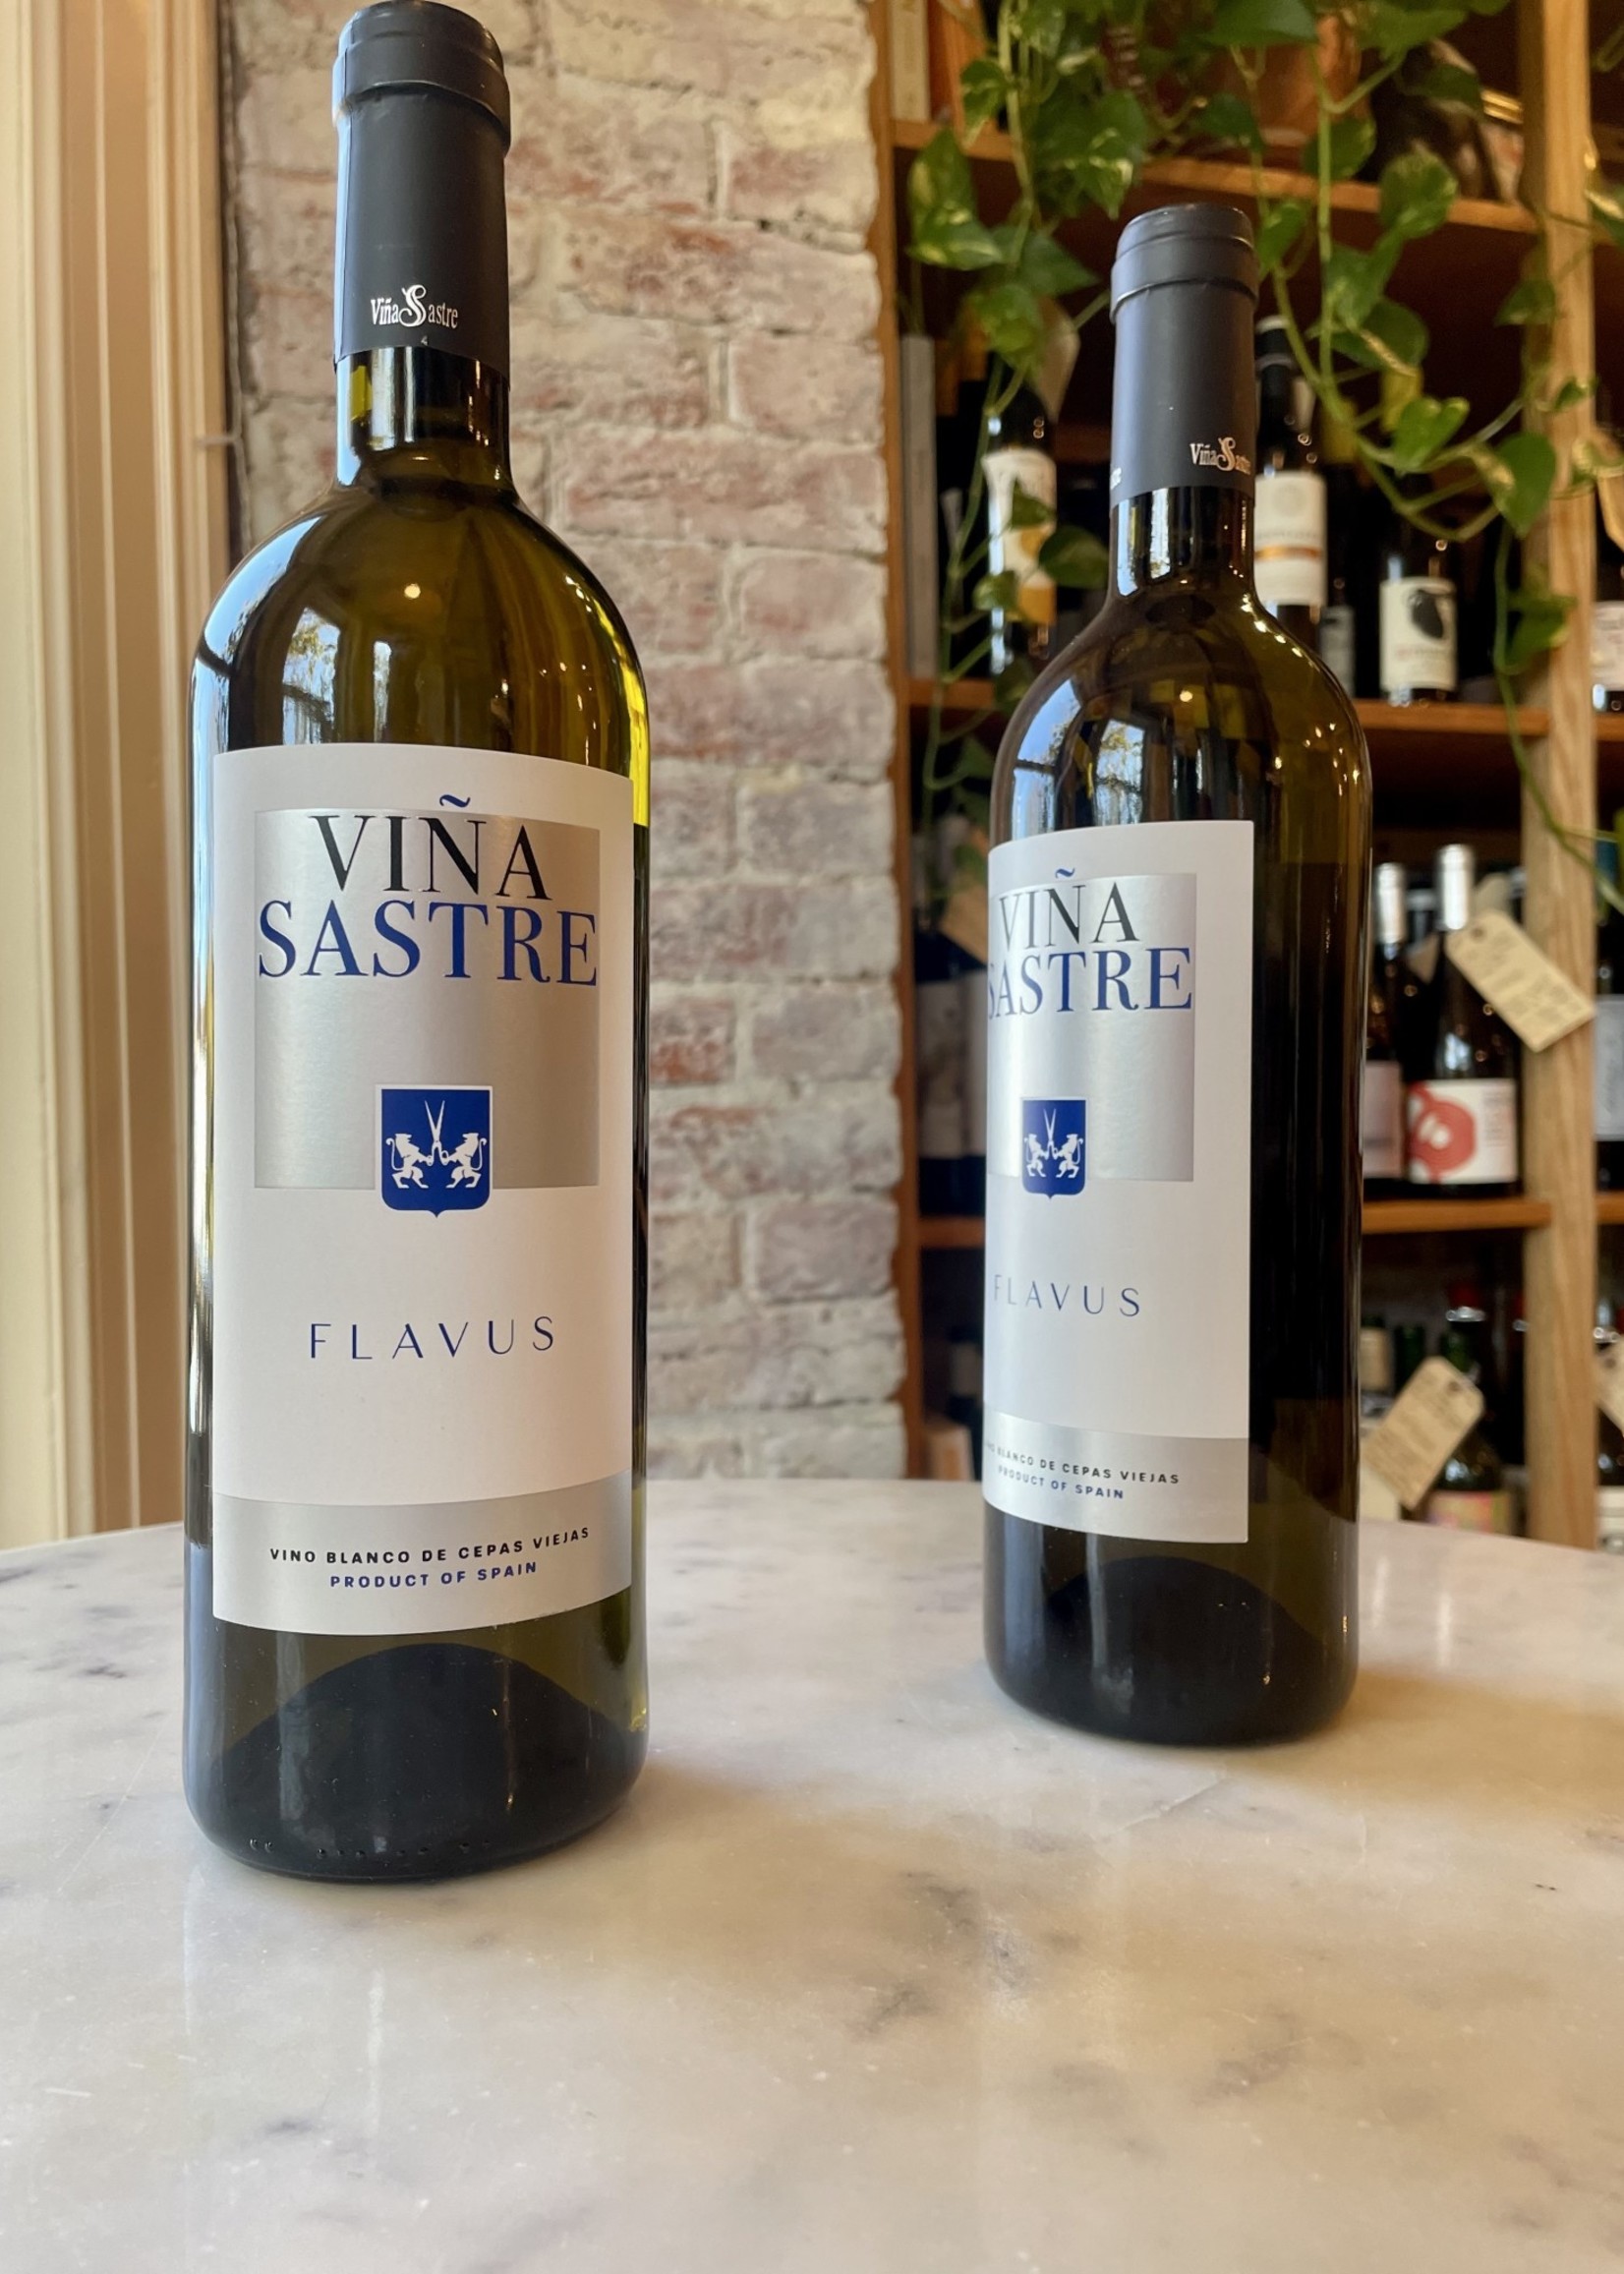 Viña Sastre, Flavus Blanco Vino de Cepas Viejas, Ribera del Duero, Spain 2019